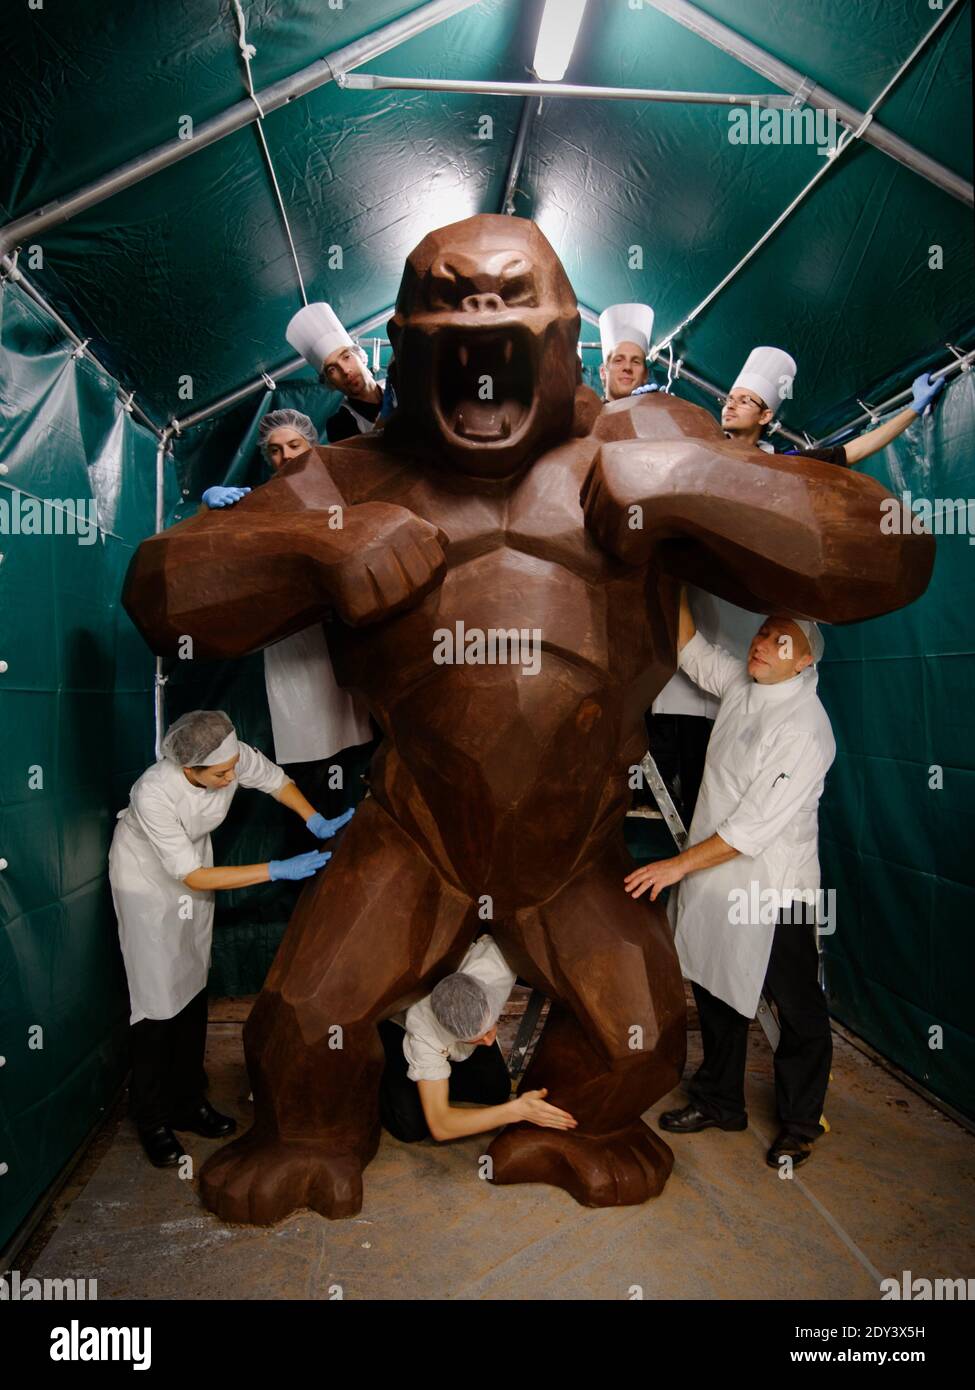 EXCLUSIF. Un Kong géant fabriqué avec du chocolat par l'artiste français  Richard Orlinski et le maître de chocolat Jean-Paul Hevin pour célébrer la  20e Foire du chocolat (salon du chocolat) à l'usine